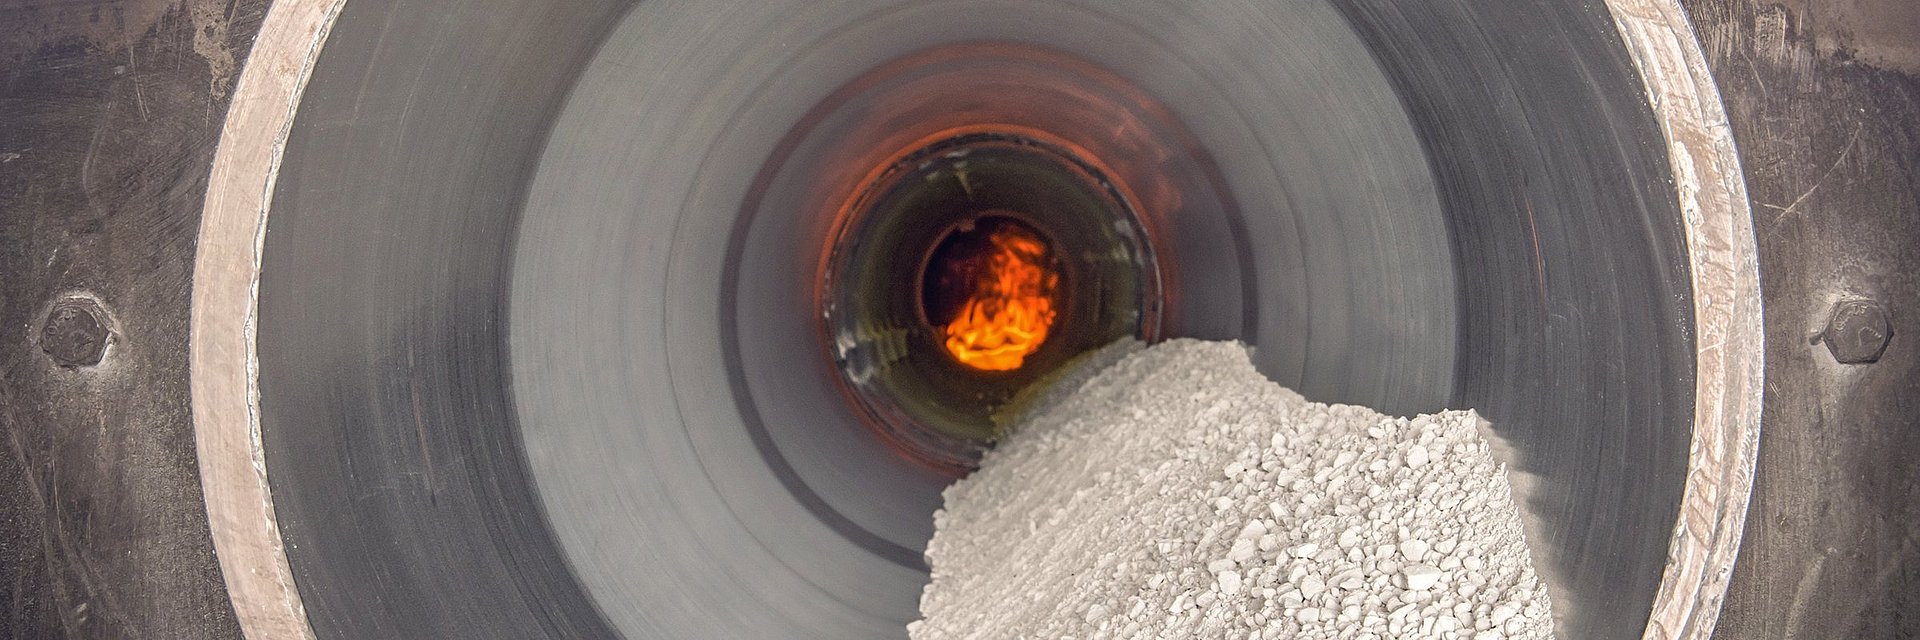 Four rotatif indirect en tube avec matériau et flamme chez IBU-tec pour des essais d'échelle et de calcination, séchage et pyrolyse